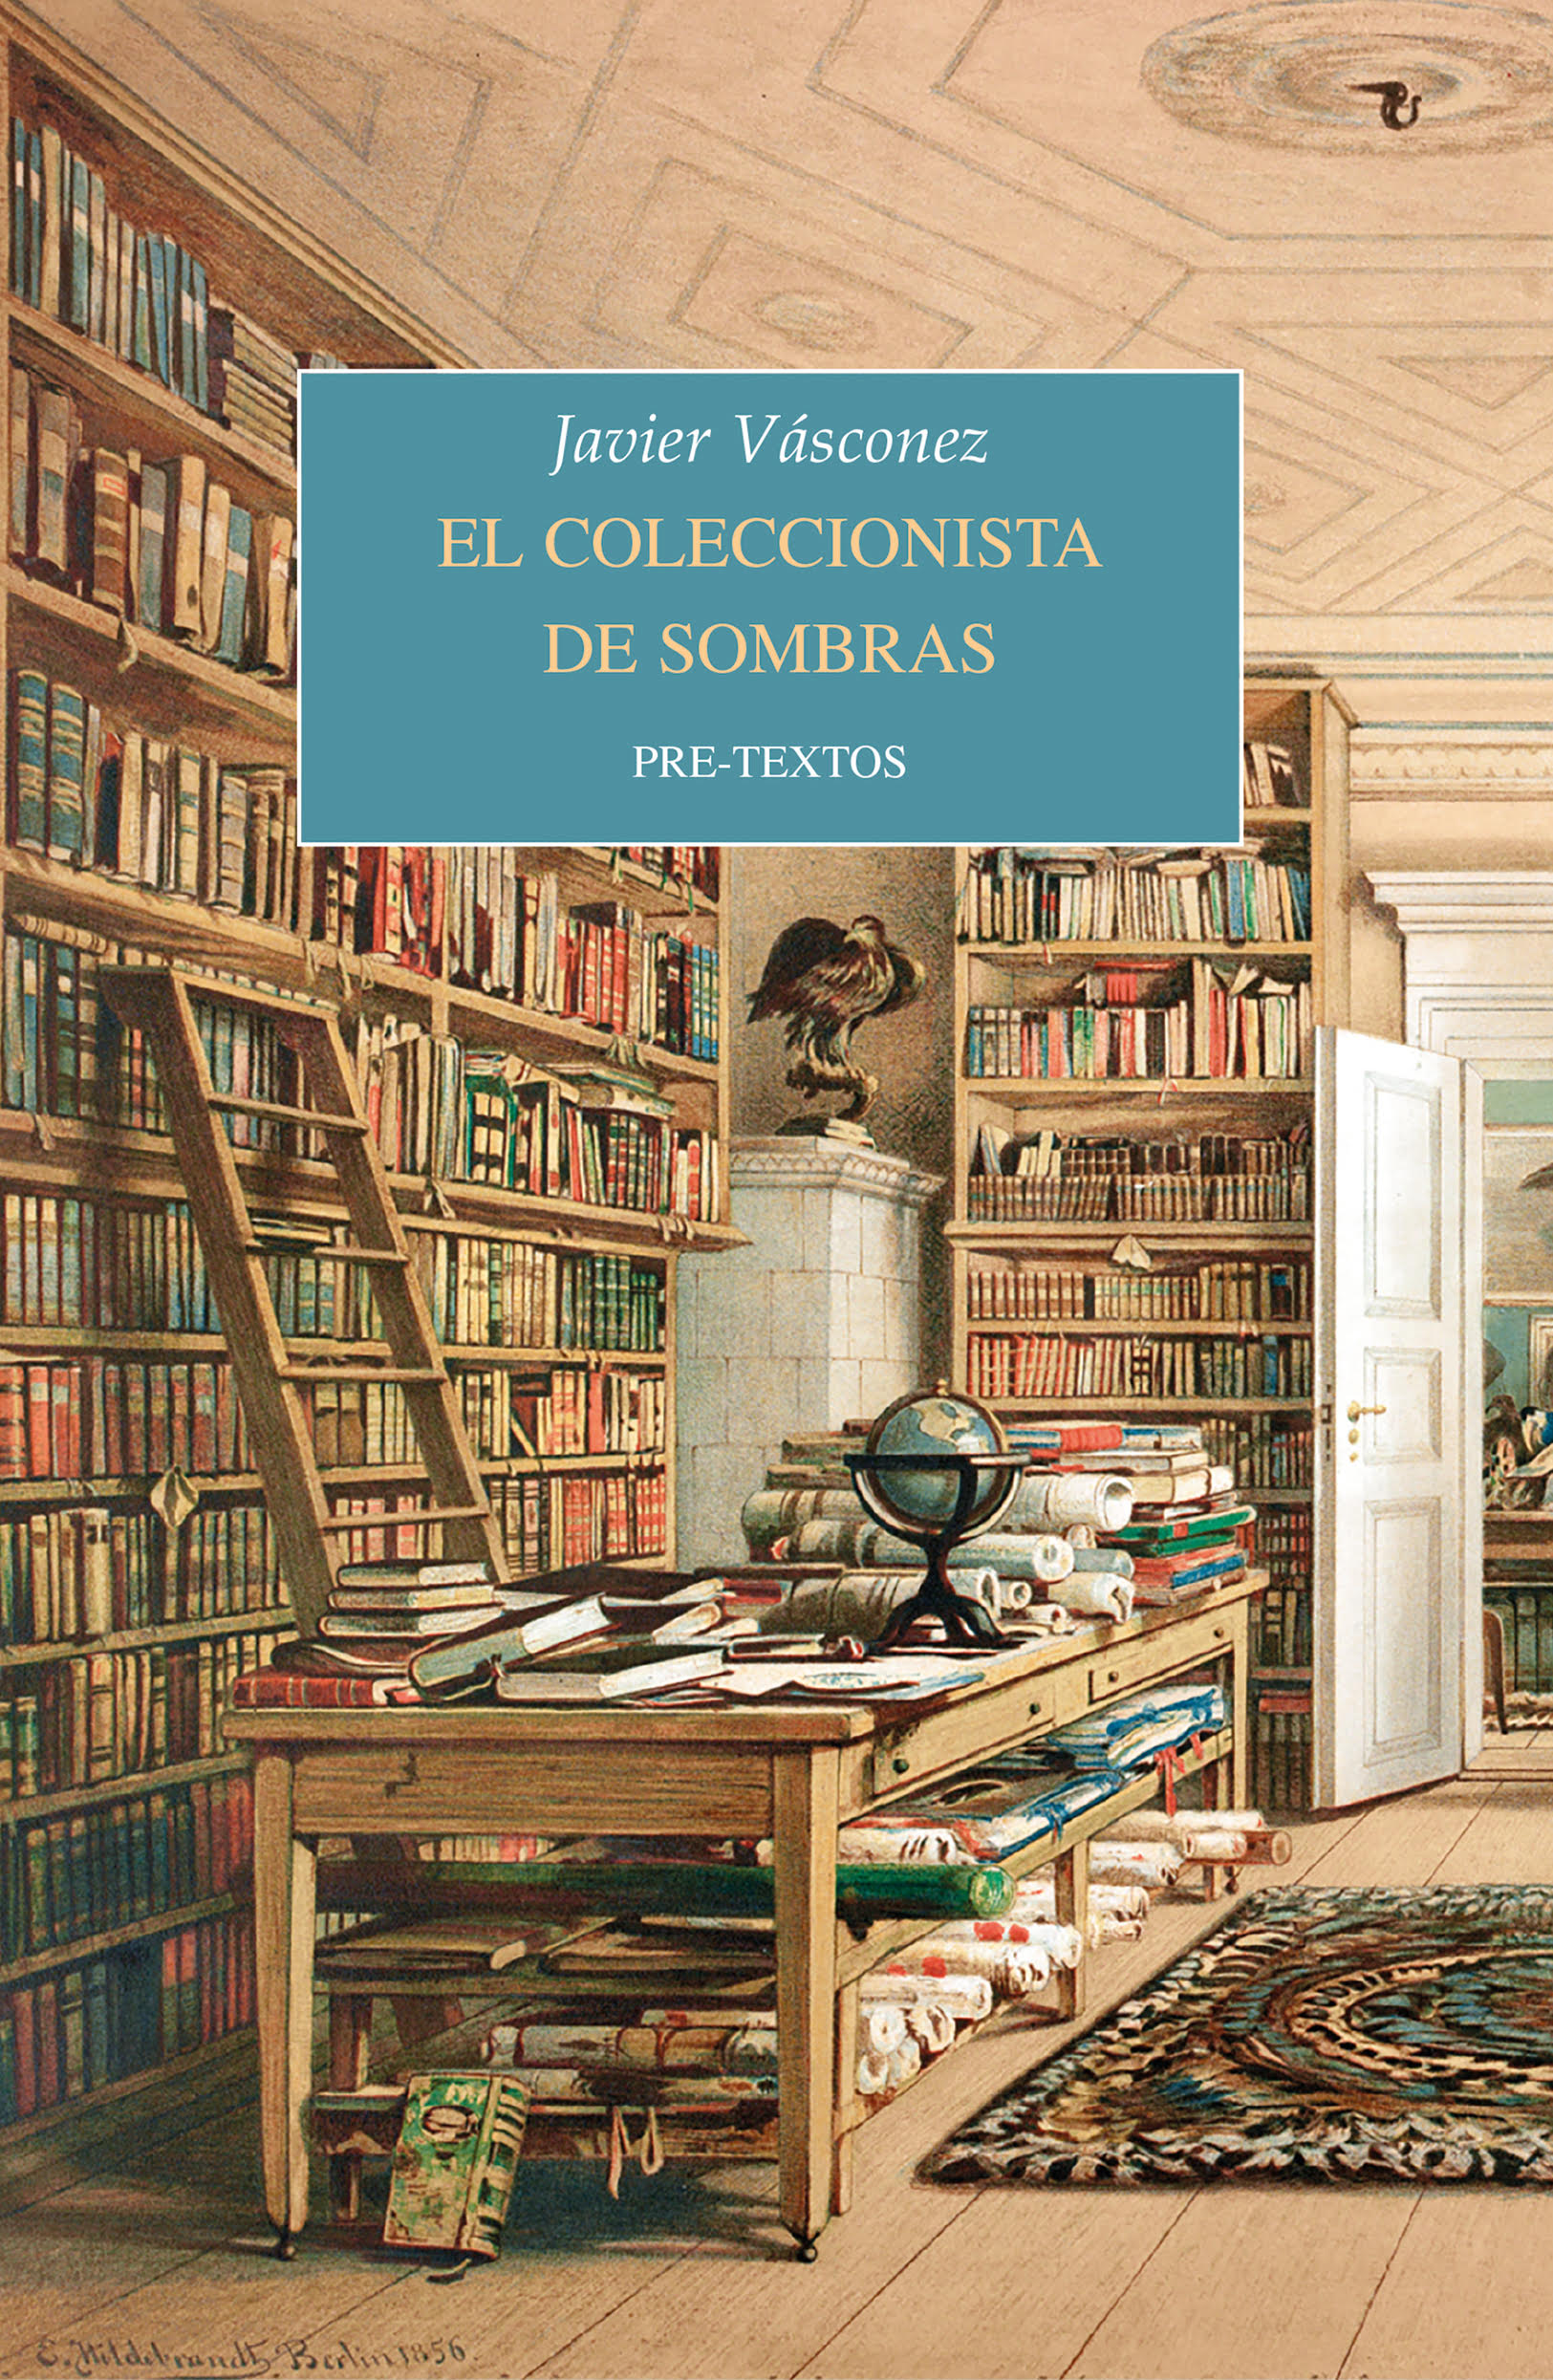 JAVIER VÁSCONEZ, El coleccionista de sombras (Pre-Textos)